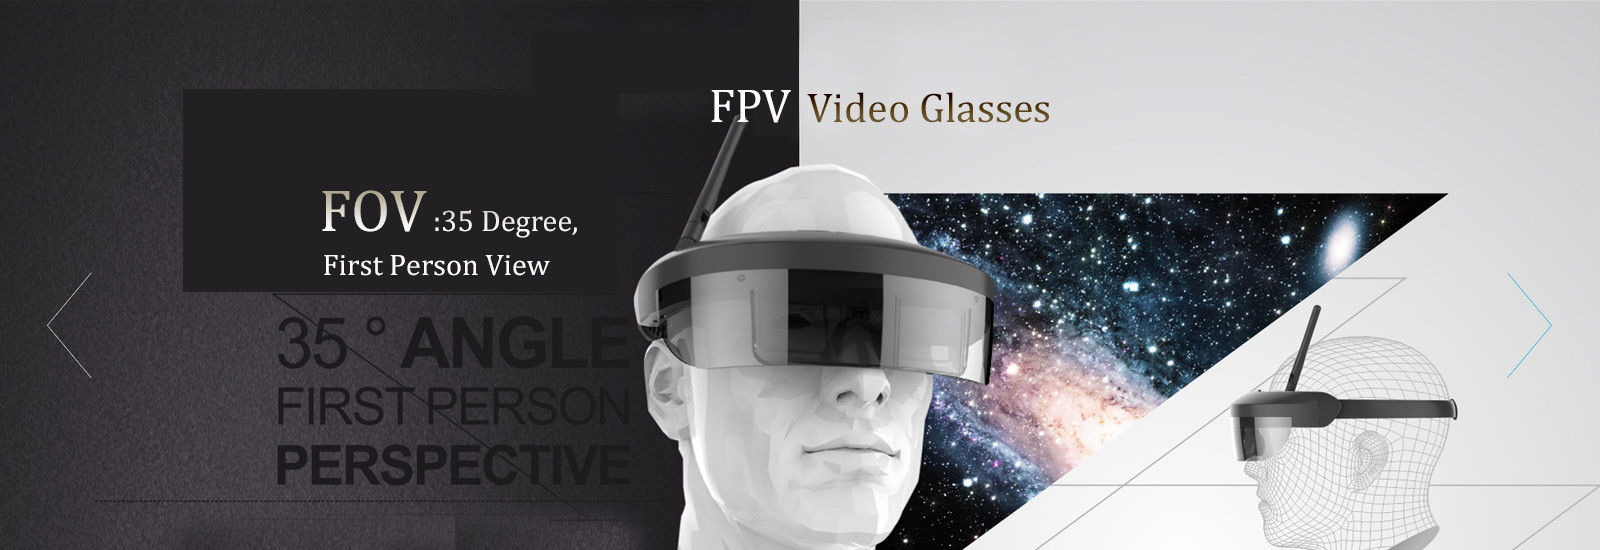 来自中国的优质FPV视频眼镜解决方案正在热销中